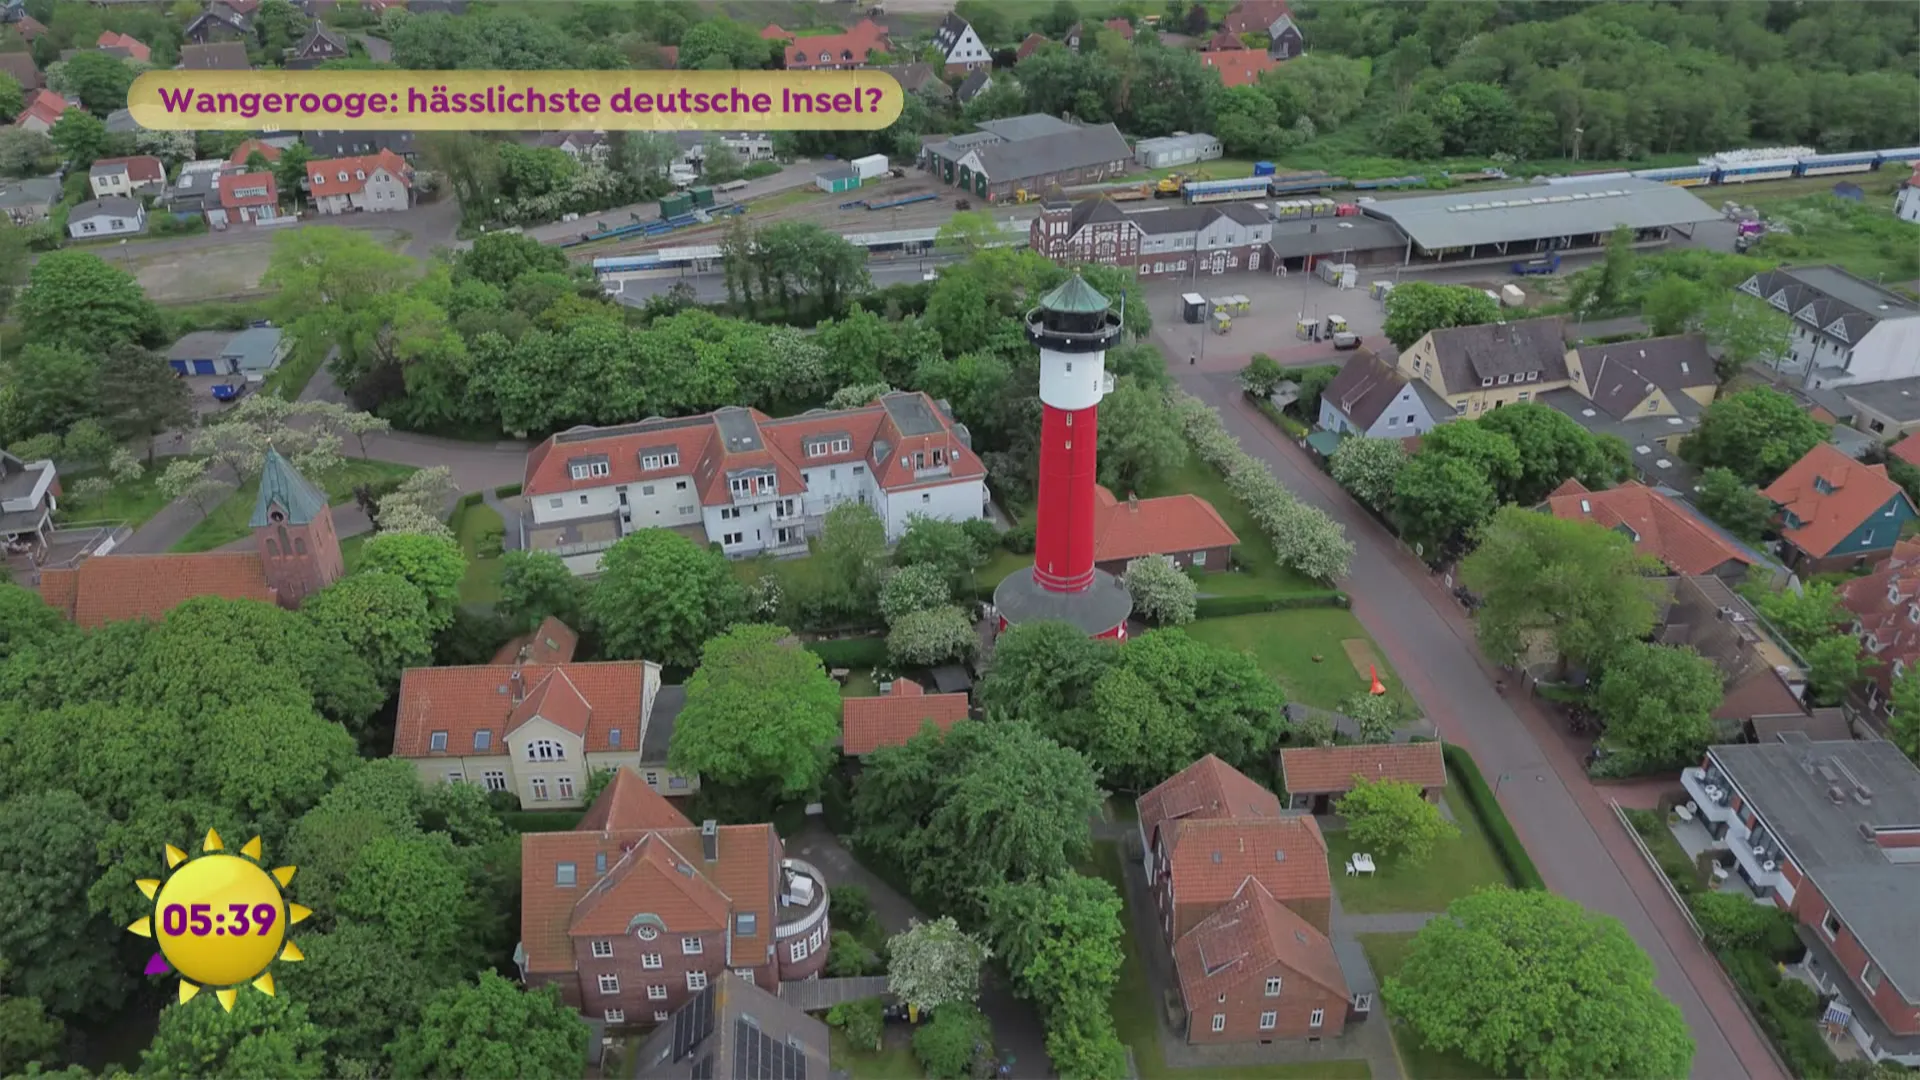 Wangerooge: Hässlichste deutsche Insel?